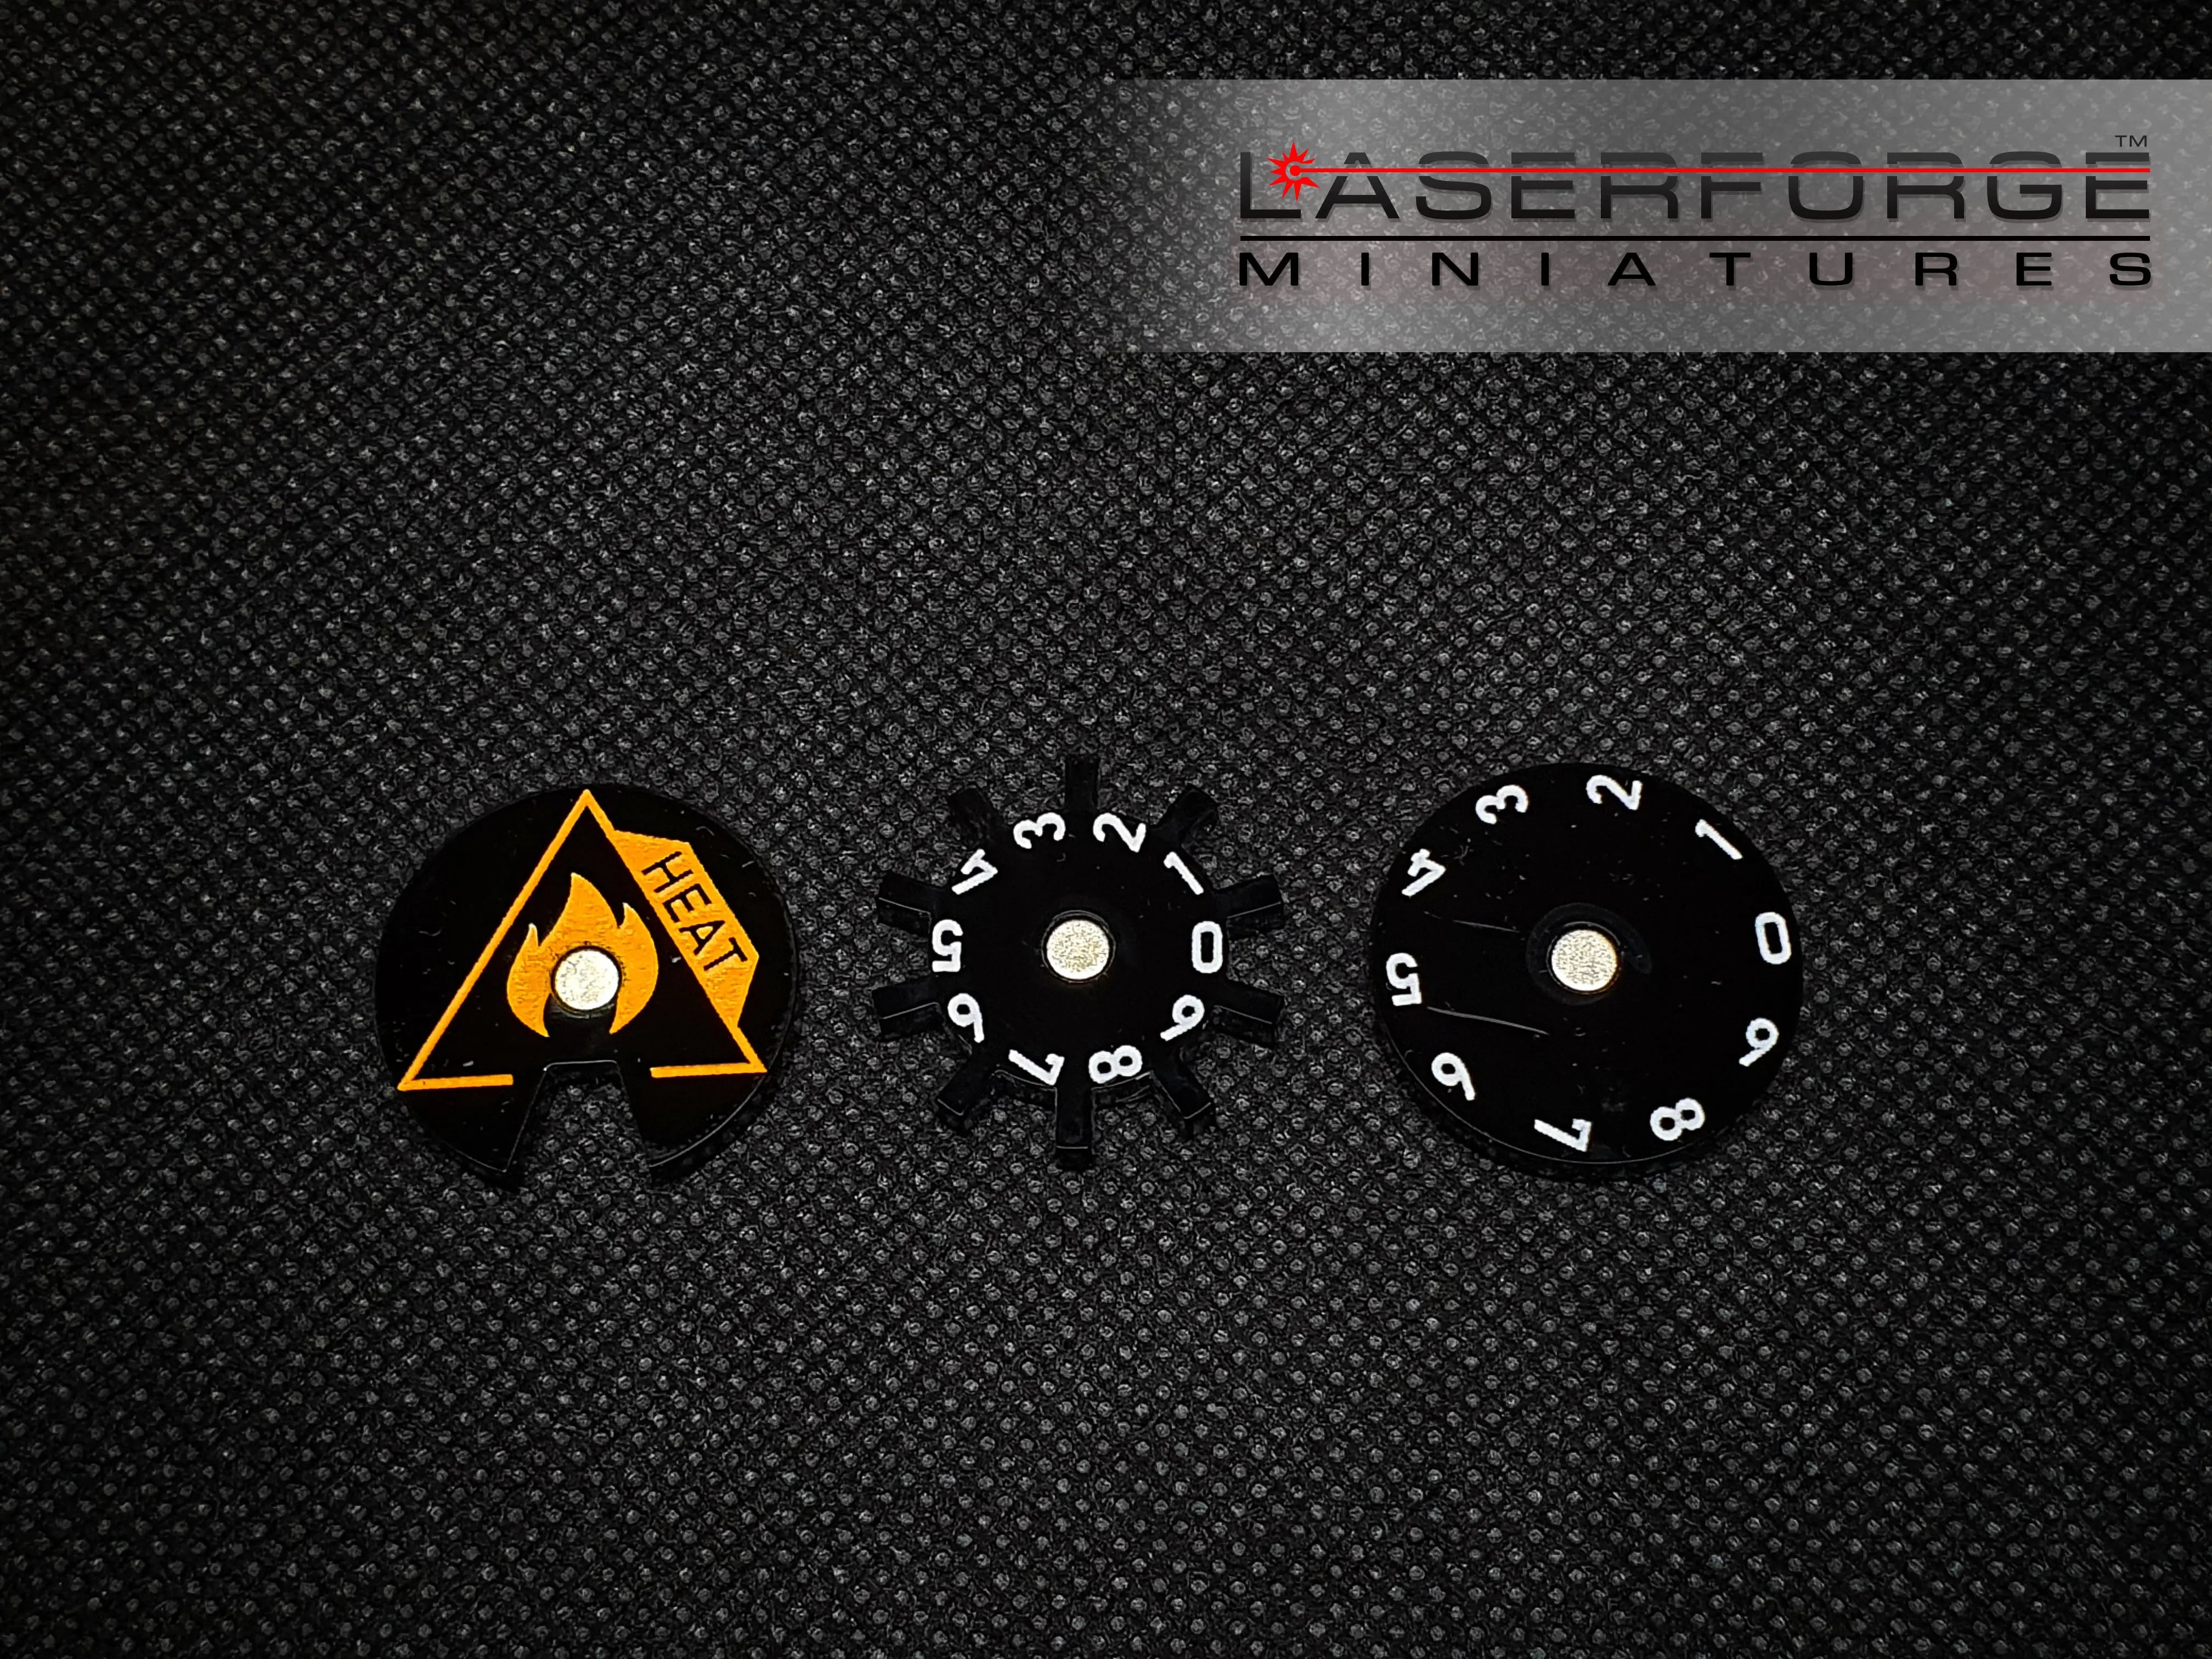 BattleTech Heat Dials (00-99) - Laserforge Miniatures